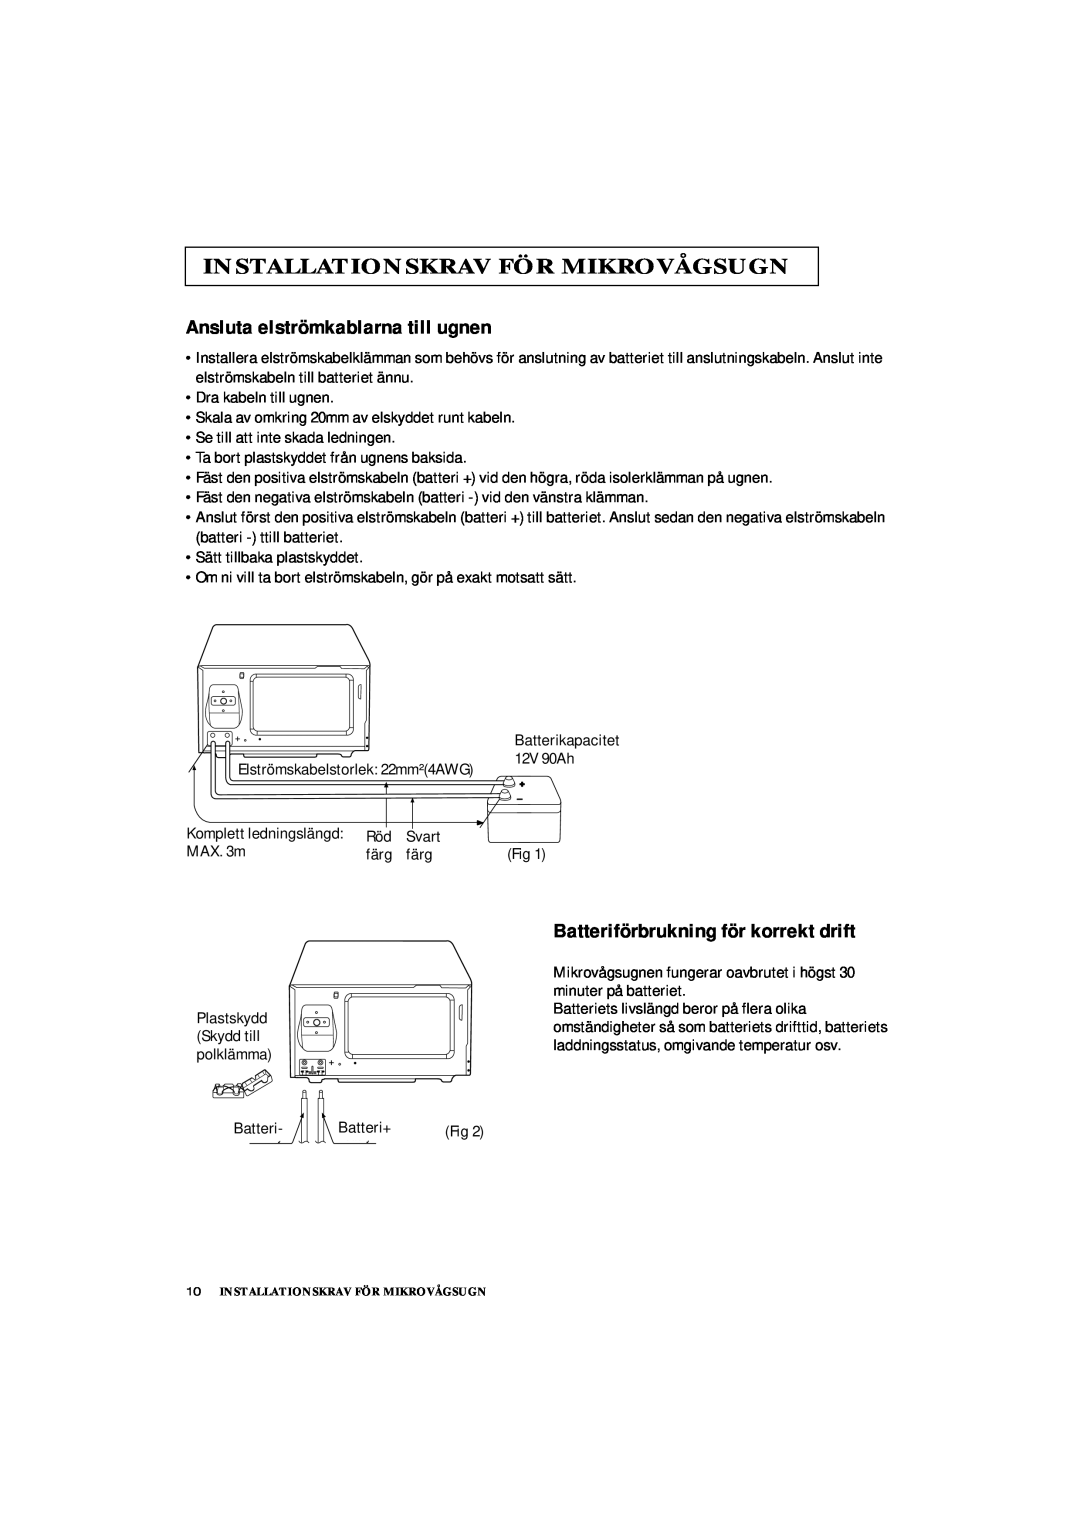 Samsung DE7711 manual Ansluta elströmkablarna till ugnen, Batteriförbrukning för korrekt drift, Batterikapacitet 